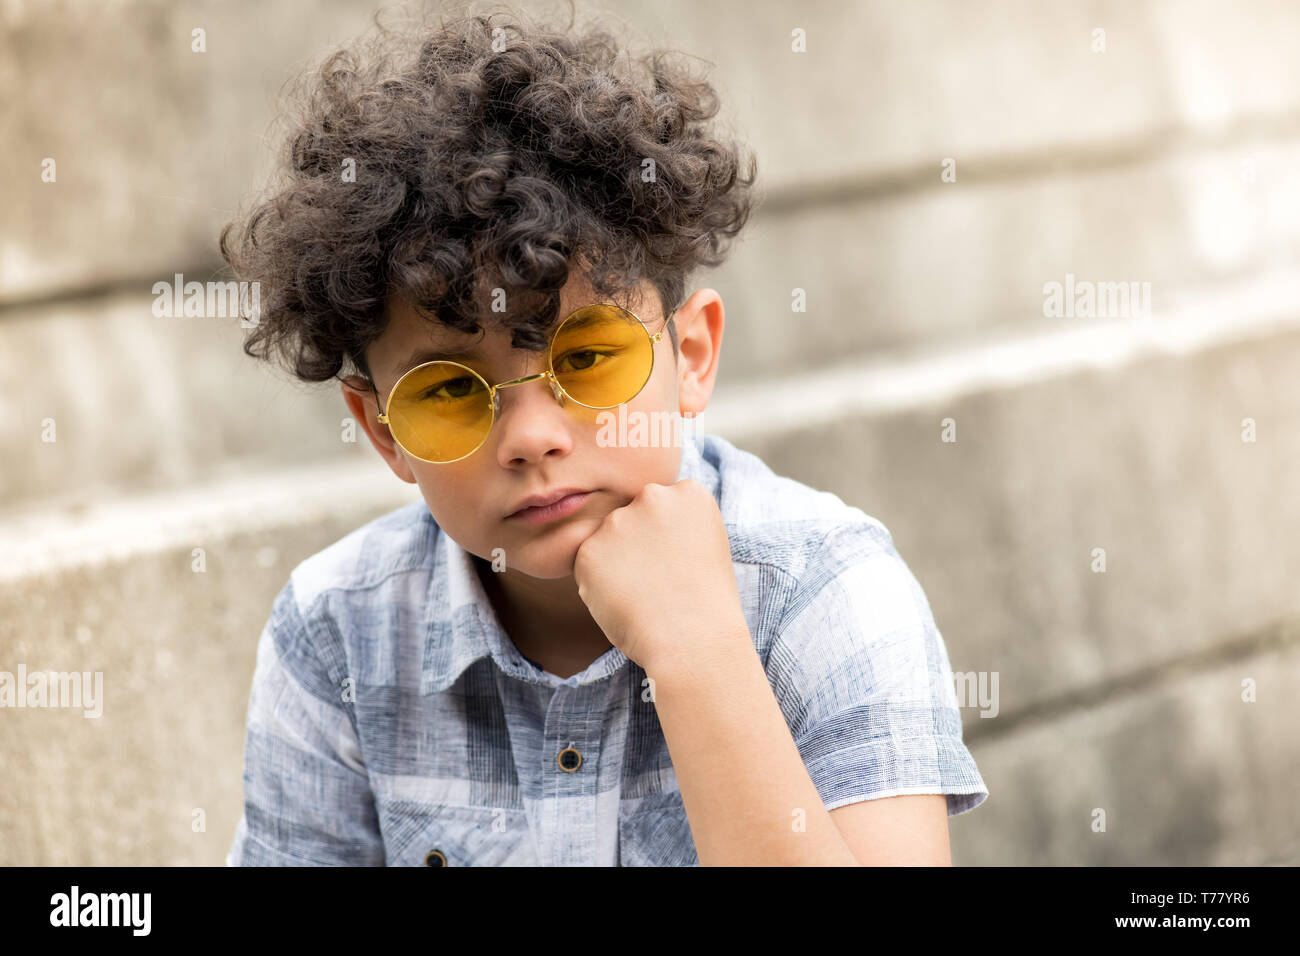 Grave giovane ragazzo con tousled capelli ricci seduto su un gradino all'aperto nel quartiere alla moda di Giallo rotondo occhiali da sole con il mento sulla mano fissando la telecamera Foto Stock